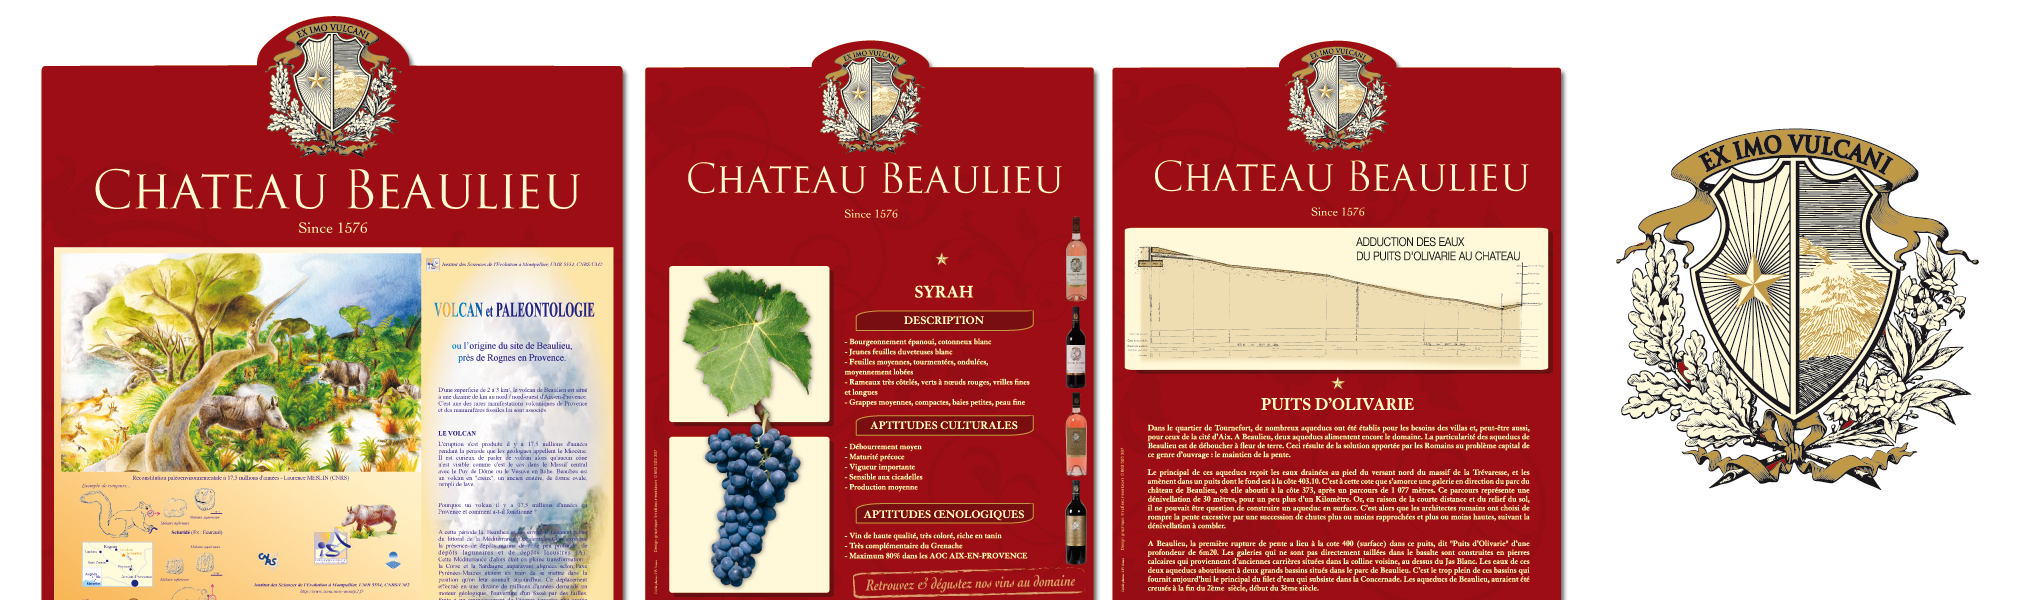 Chateau Beaulieu - Signalétique parcelles vignes